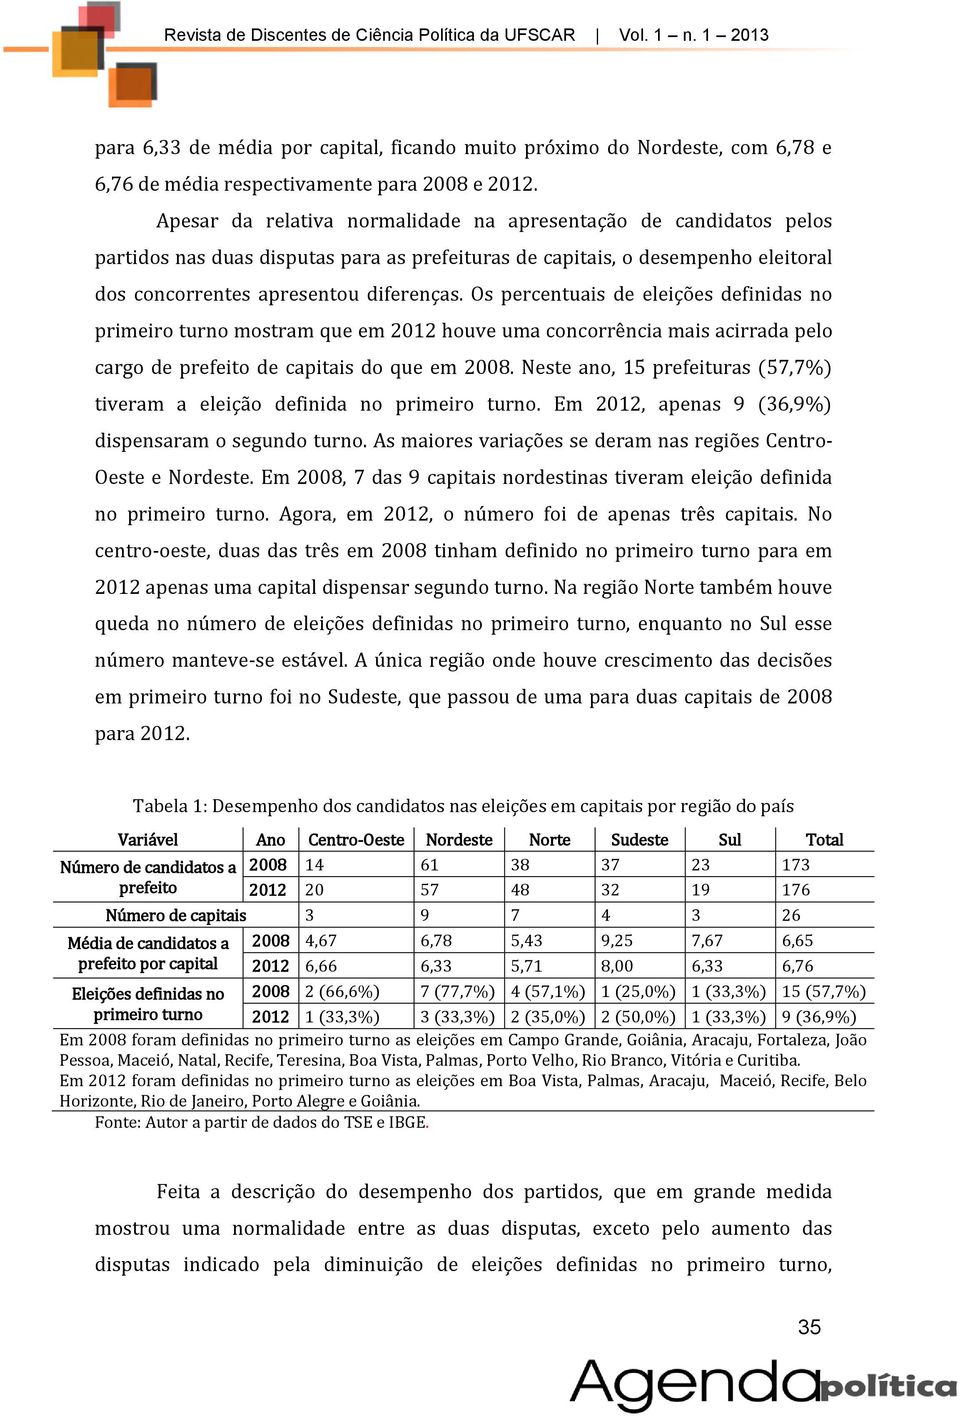 Os percentuais de eleições definidas no primeiro turno mostram que em 2012 houve uma concorrência mais acirrada pelo cargo de prefeito de capitais do que em 2008.